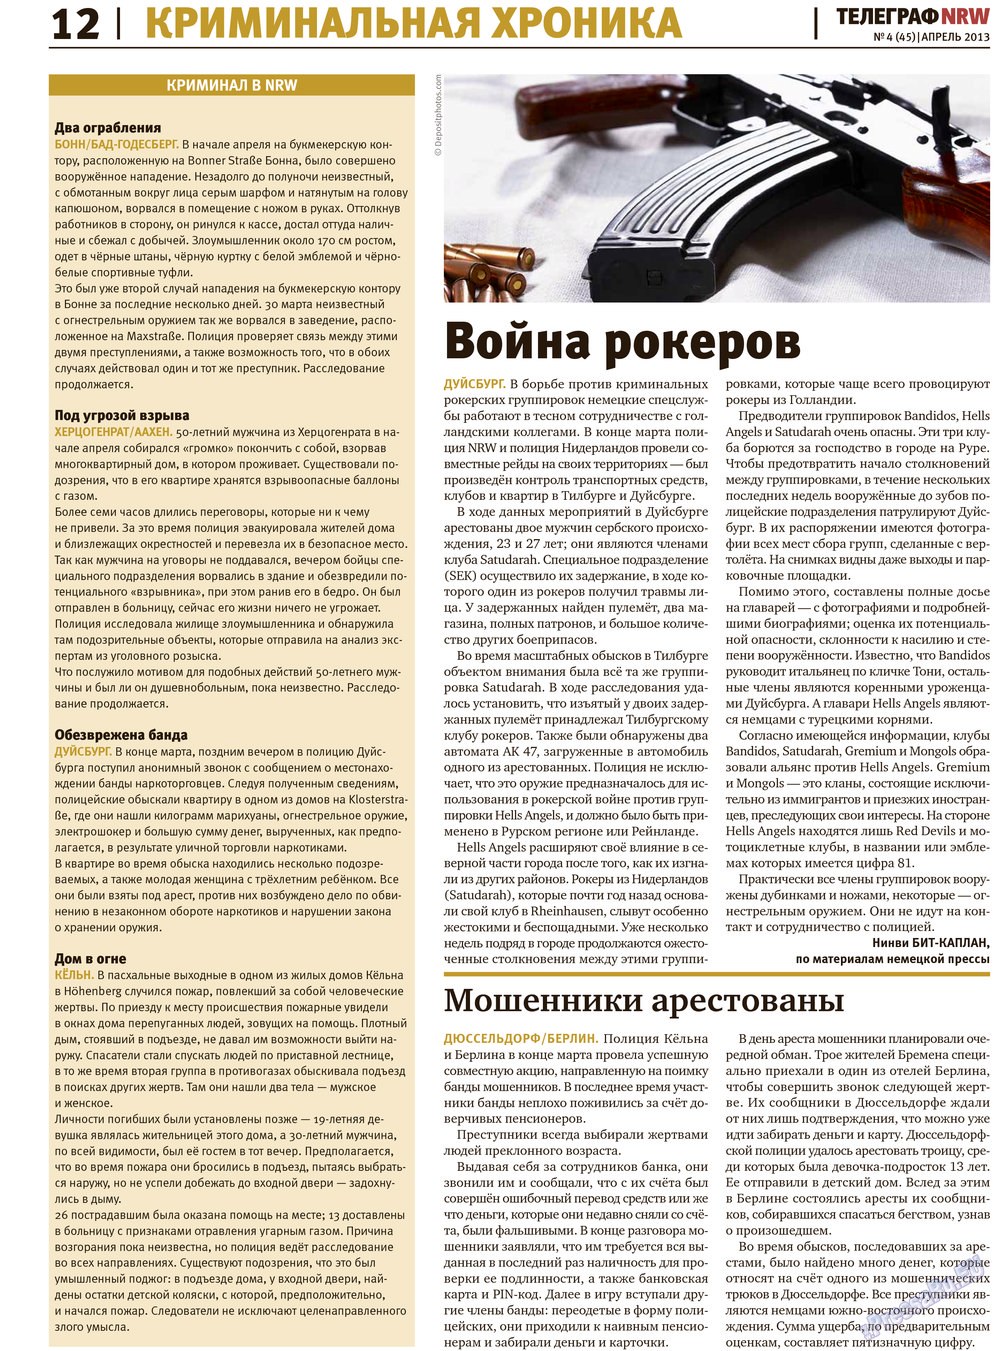 Телеграф NRW (газета). 2013 год, номер 4, стр. 12